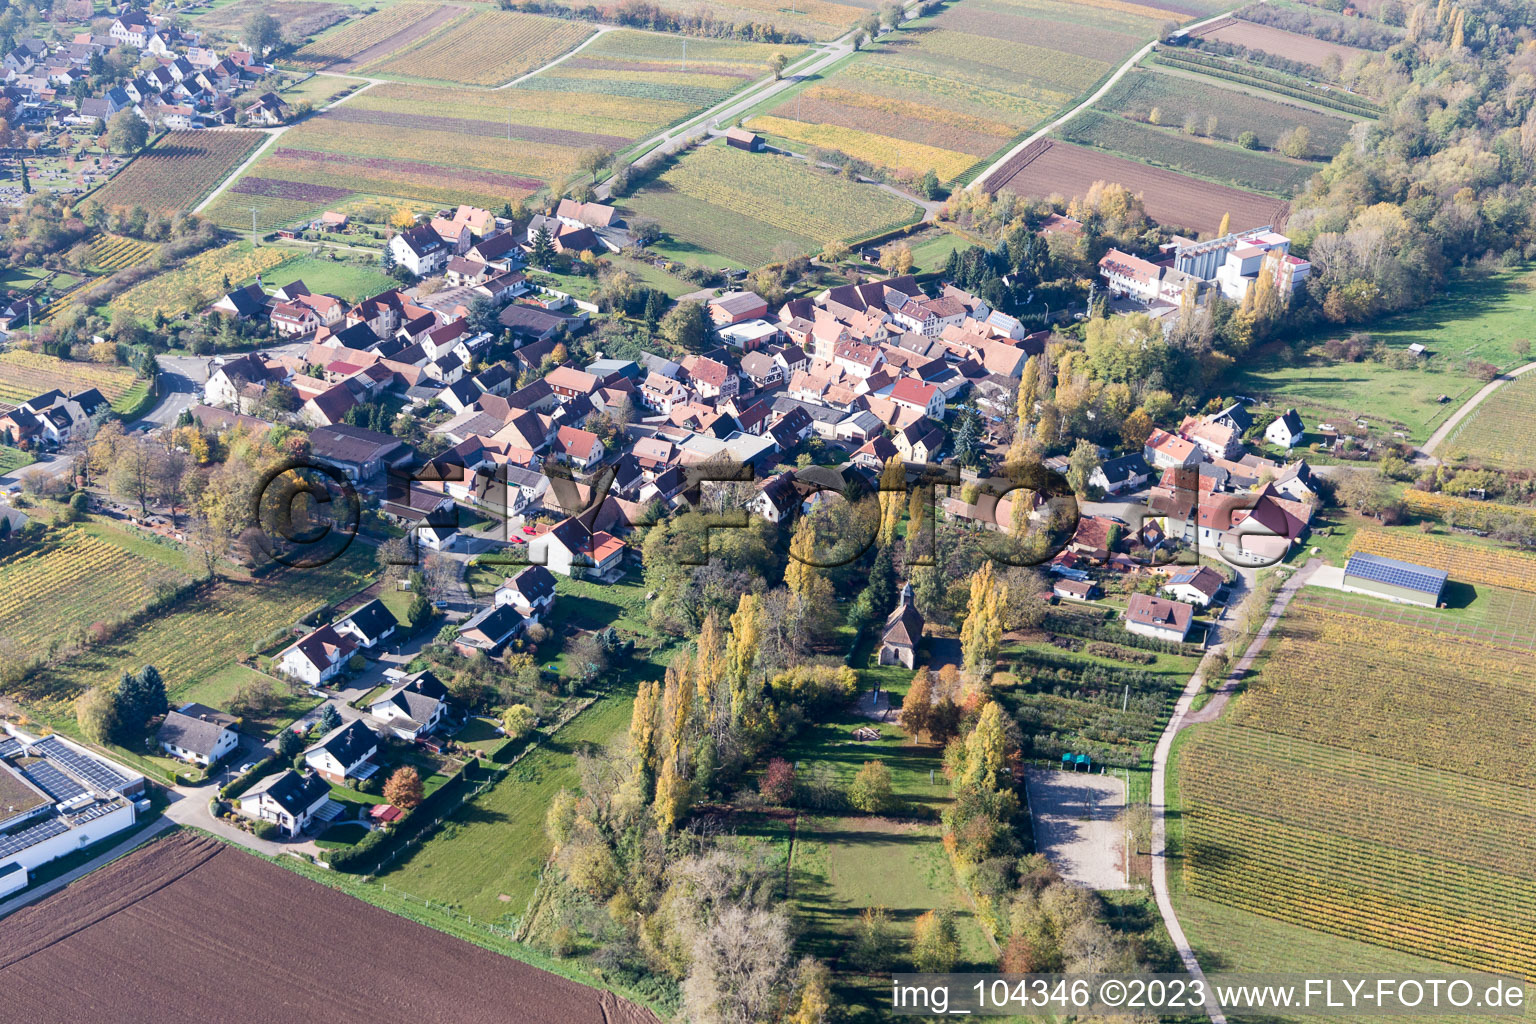 Quartier Appenhofen in Billigheim-Ingenheim dans le département Rhénanie-Palatinat, Allemagne d'un drone